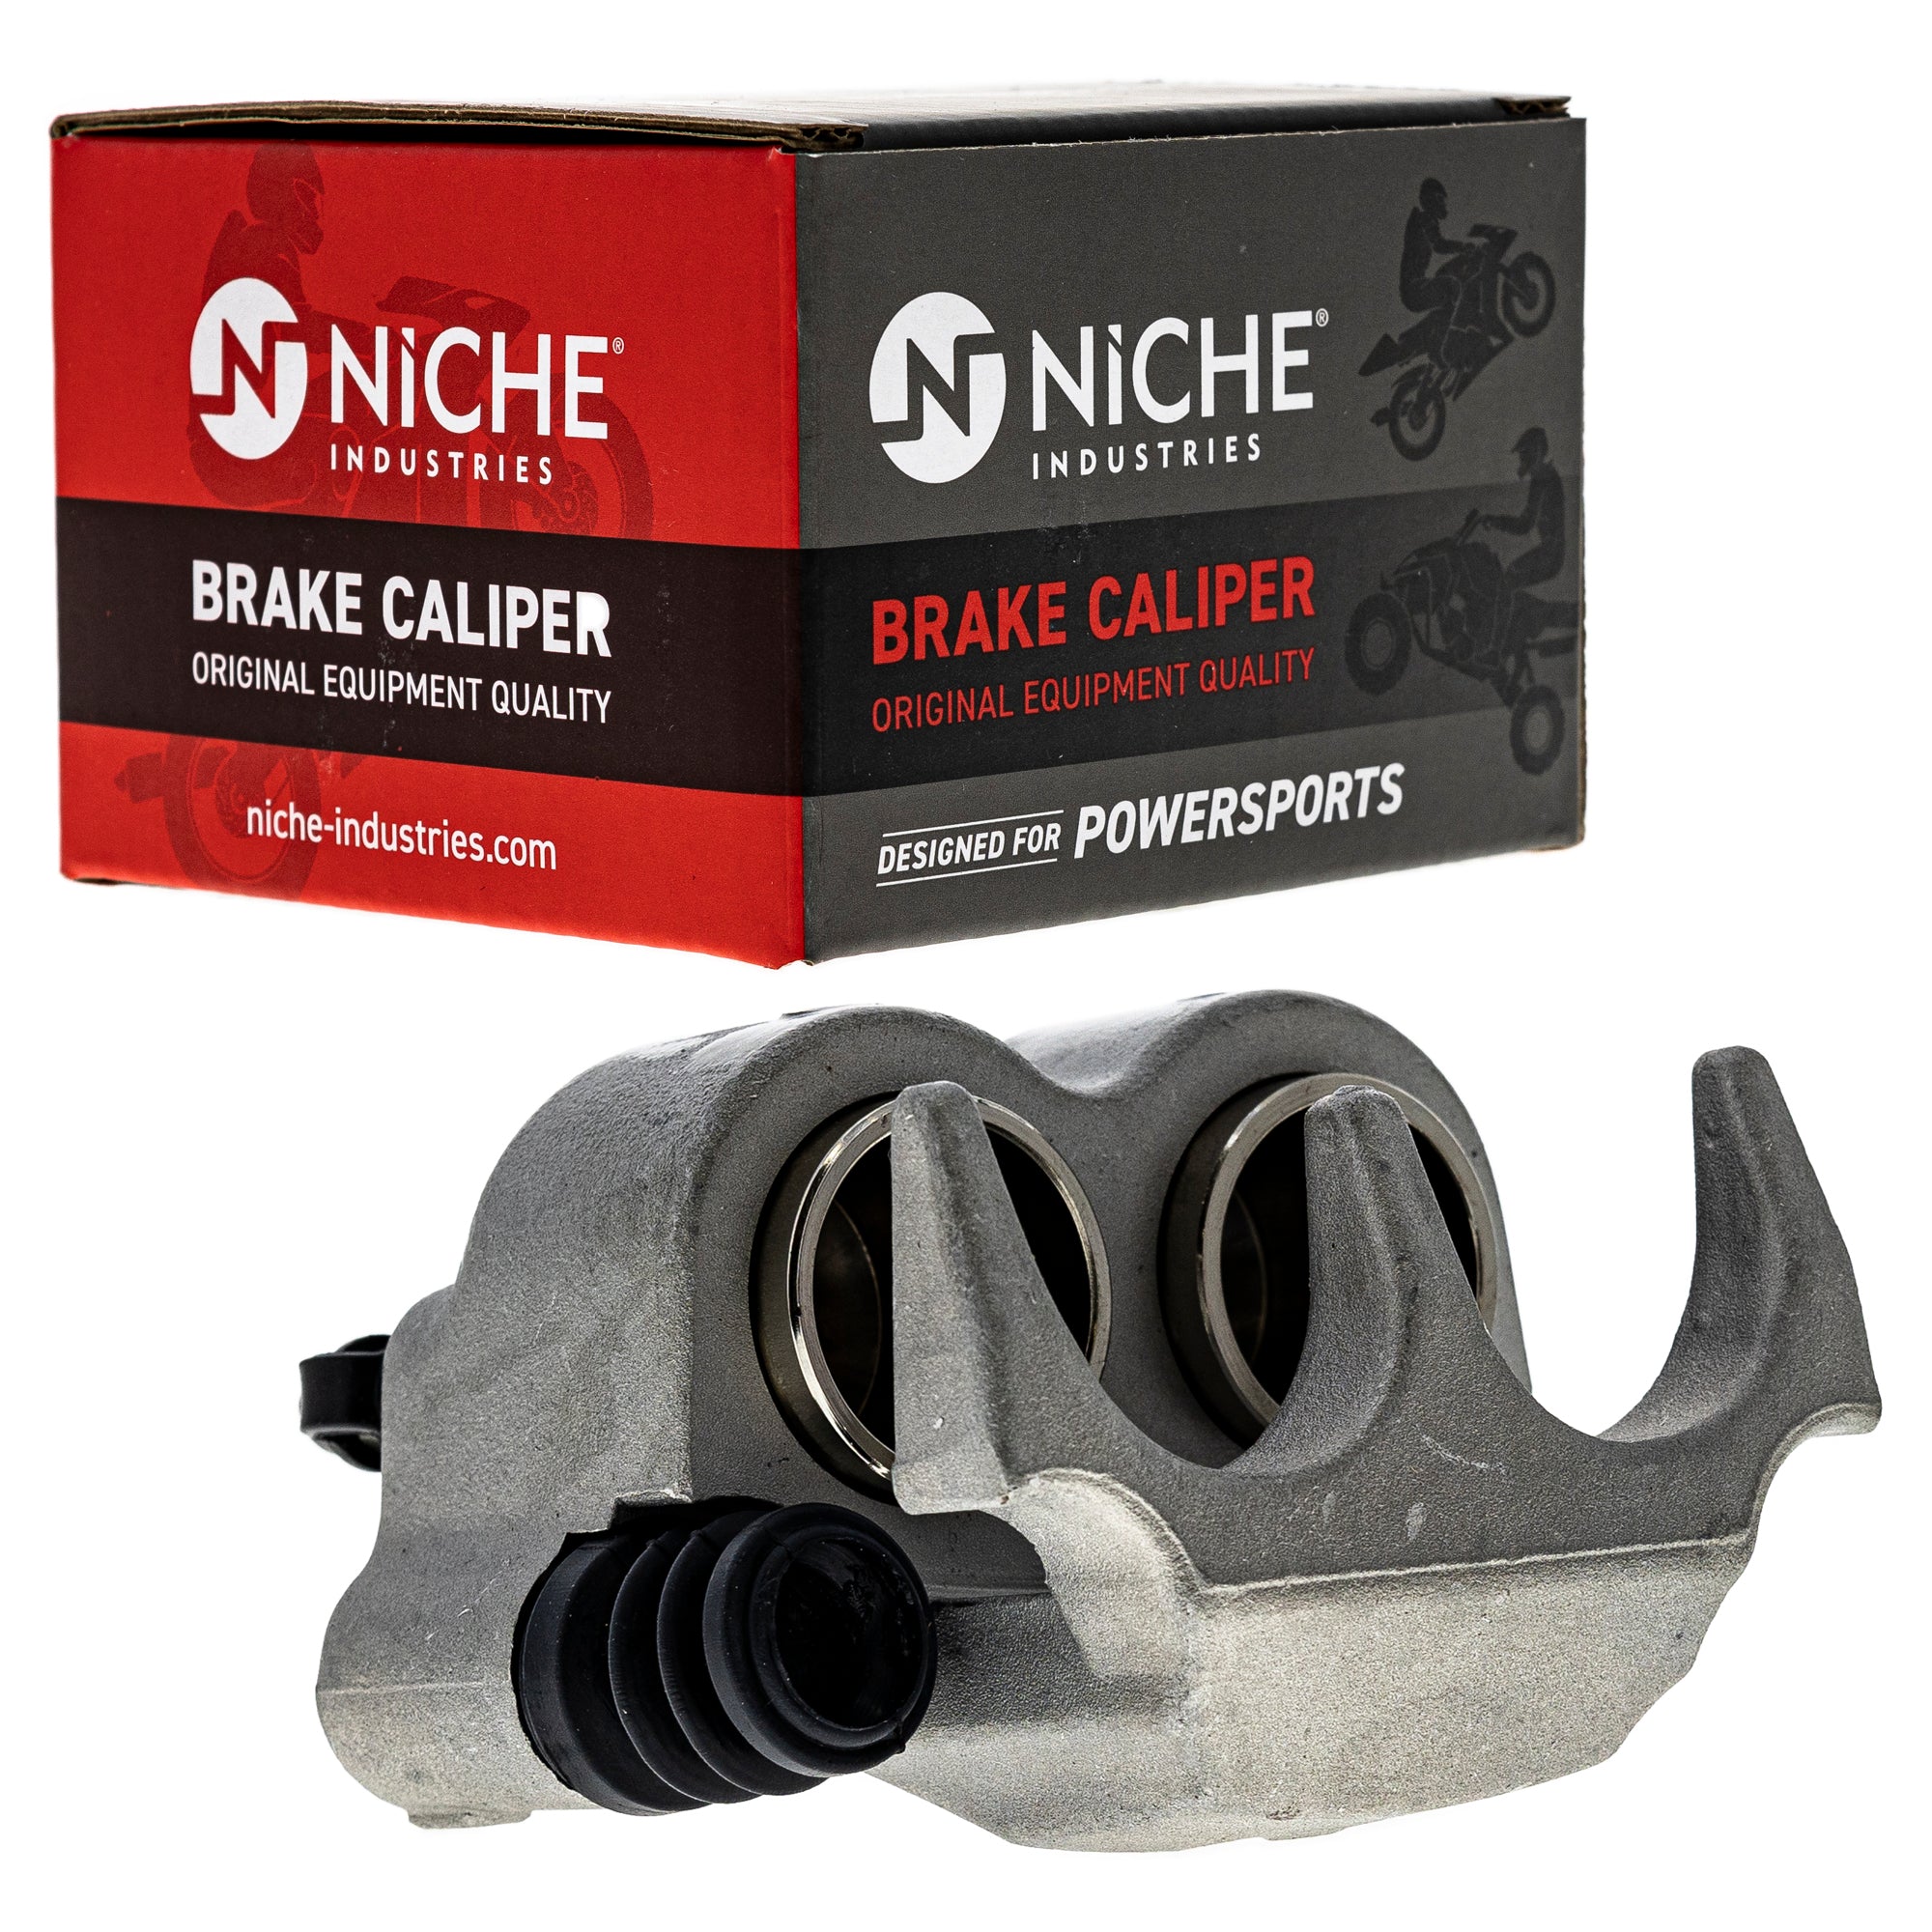 NICHE MK1001256 Brake Caliper Kit